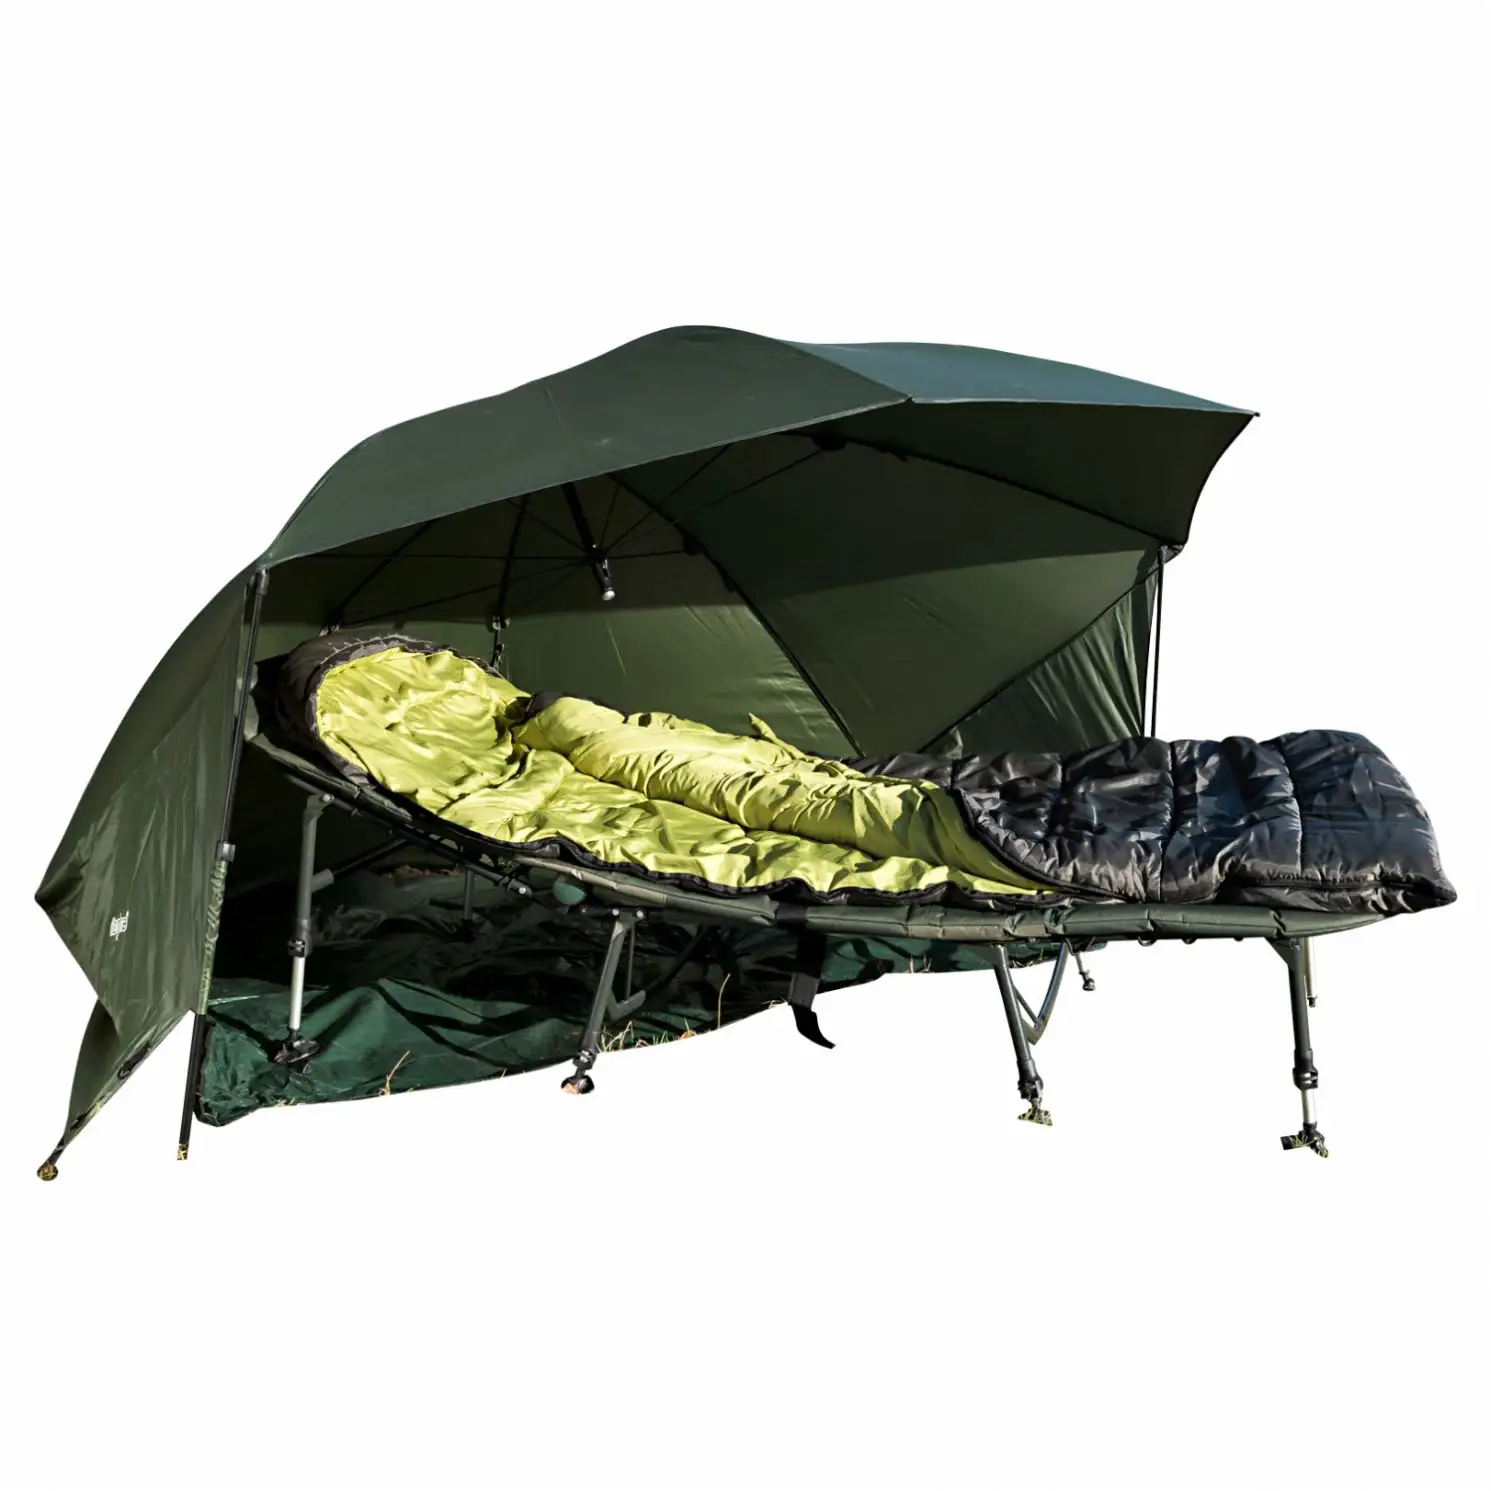 خيمة كبيرة ذات جودة عالية للتخييم خارج المنزل على الشاطئ من بيفوي خيمة مضادة للماء وقابلة للنفخ ويمكن طيها مظلة صيد سمك الشبوط مع مأوى